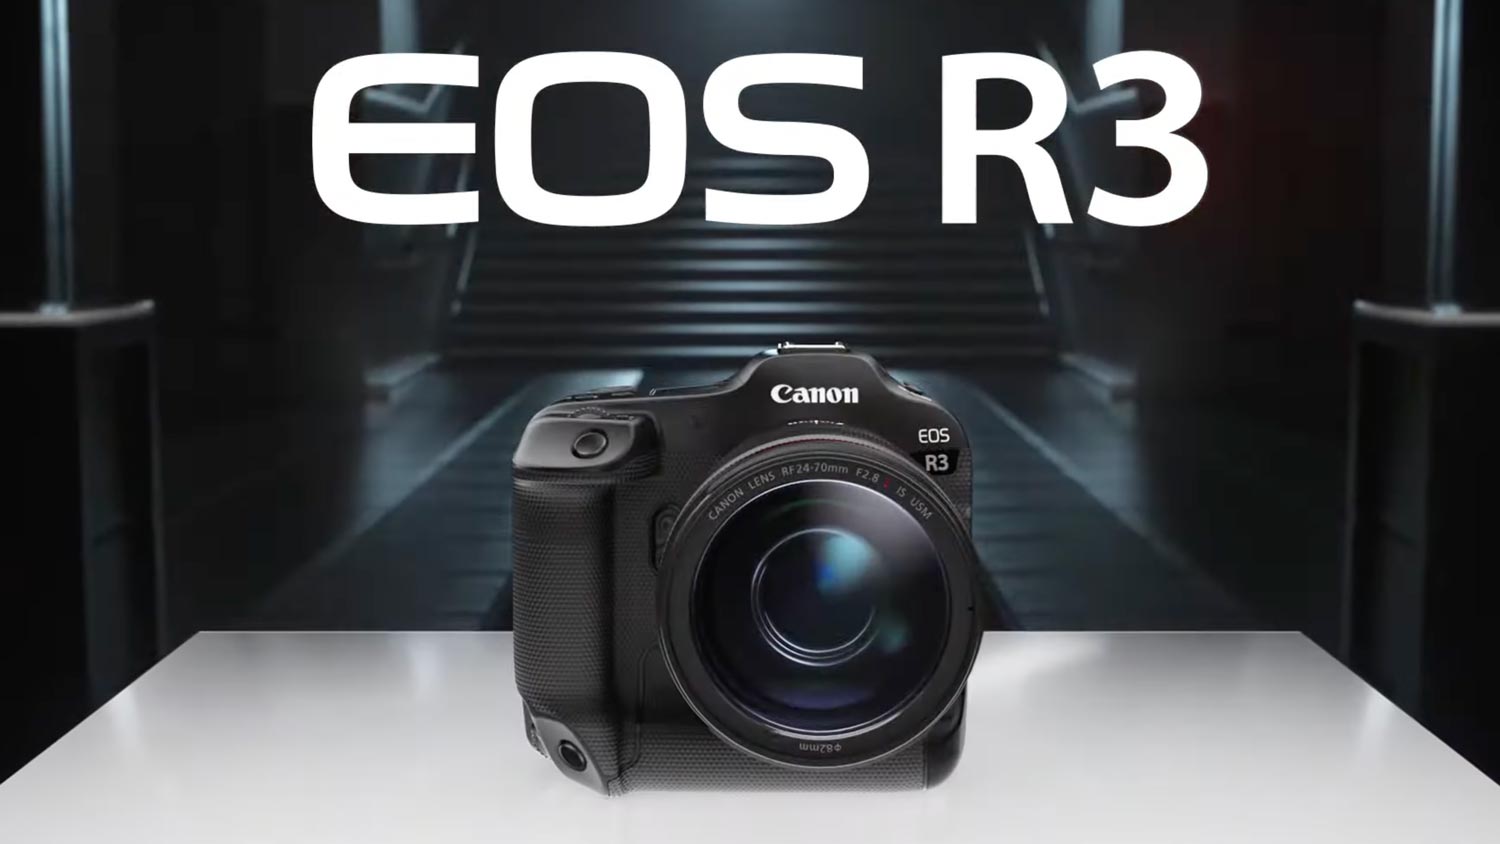 Pengeluaran Canon EOS R3 Dan Lensa 14-35mm F4L Ditunda Selama Enam Bulan Kerana Isu Bekalan Komponen